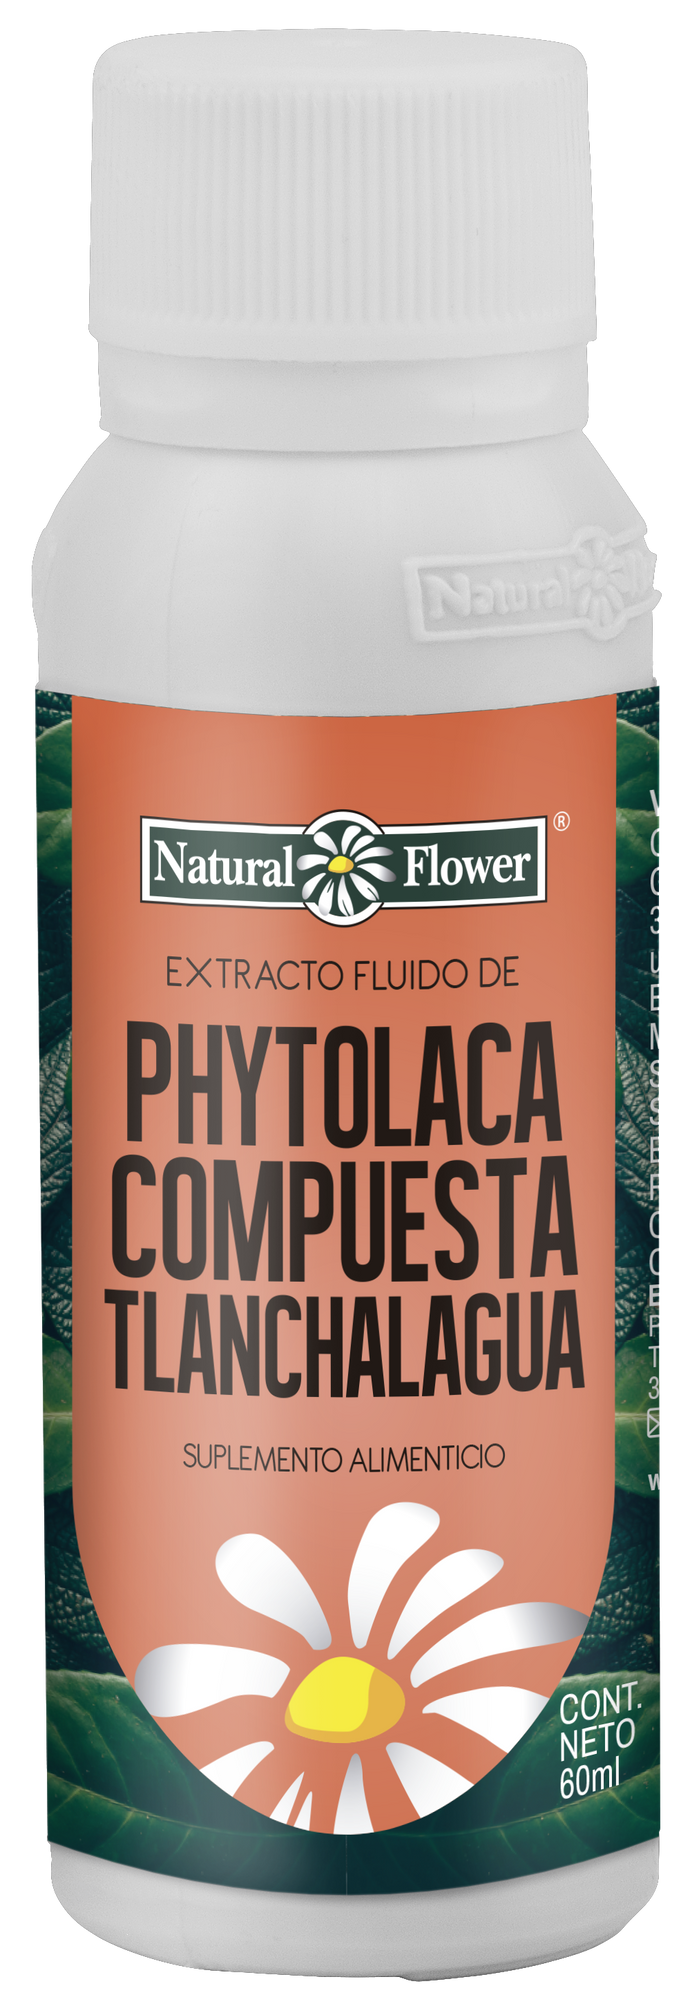 Extracto de Phytolaca con Tlanchalagua